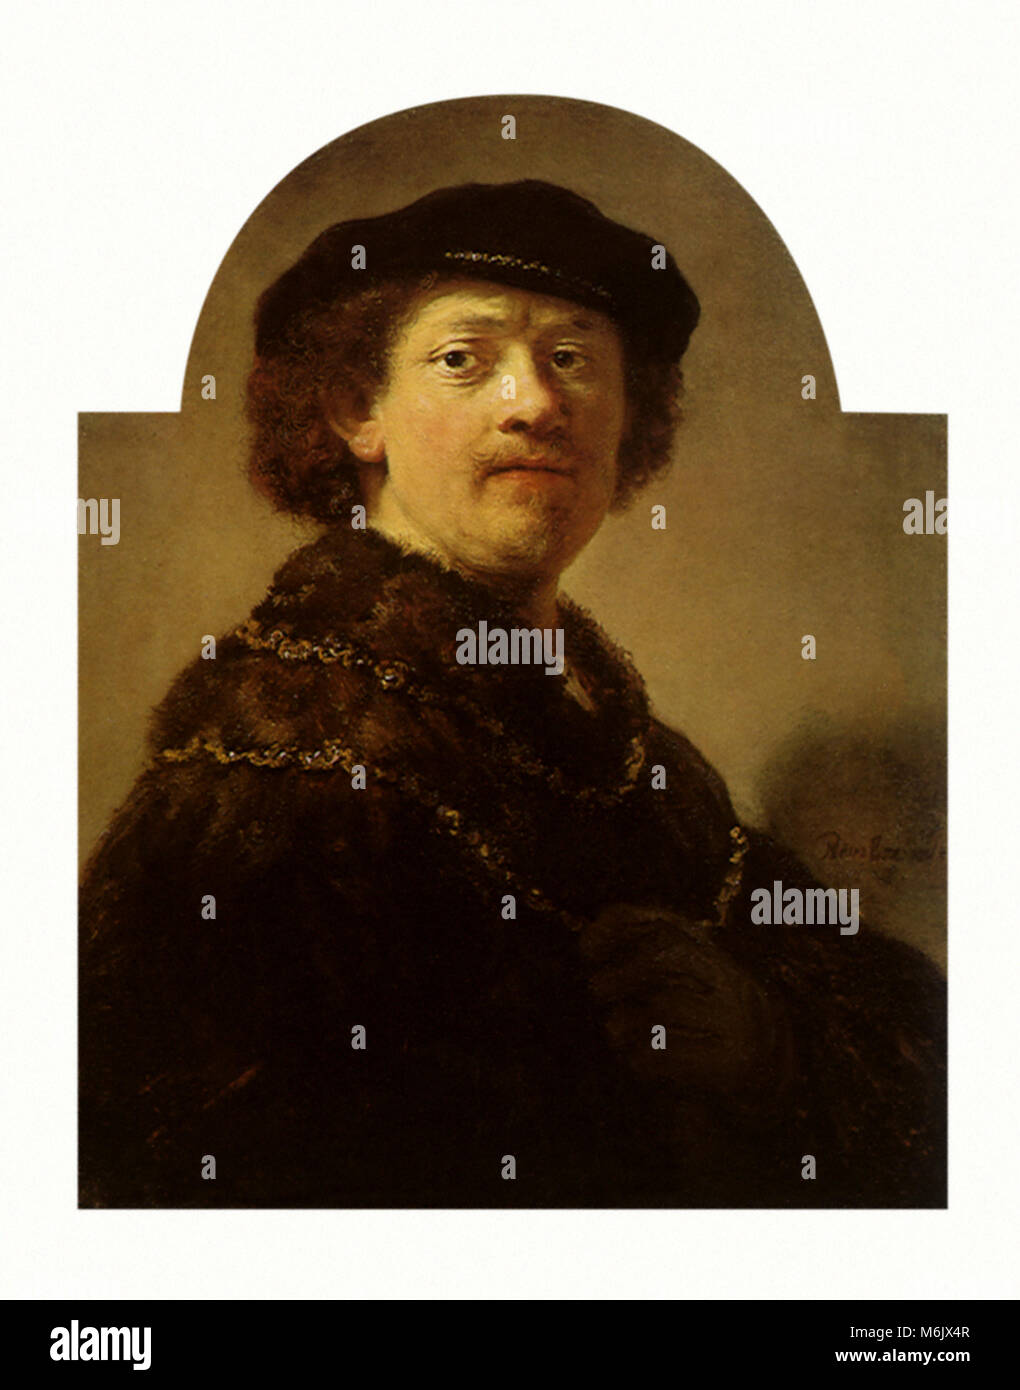 Portrait de Rembrandt, Rembrandt, élève de, 1640. Banque D'Images